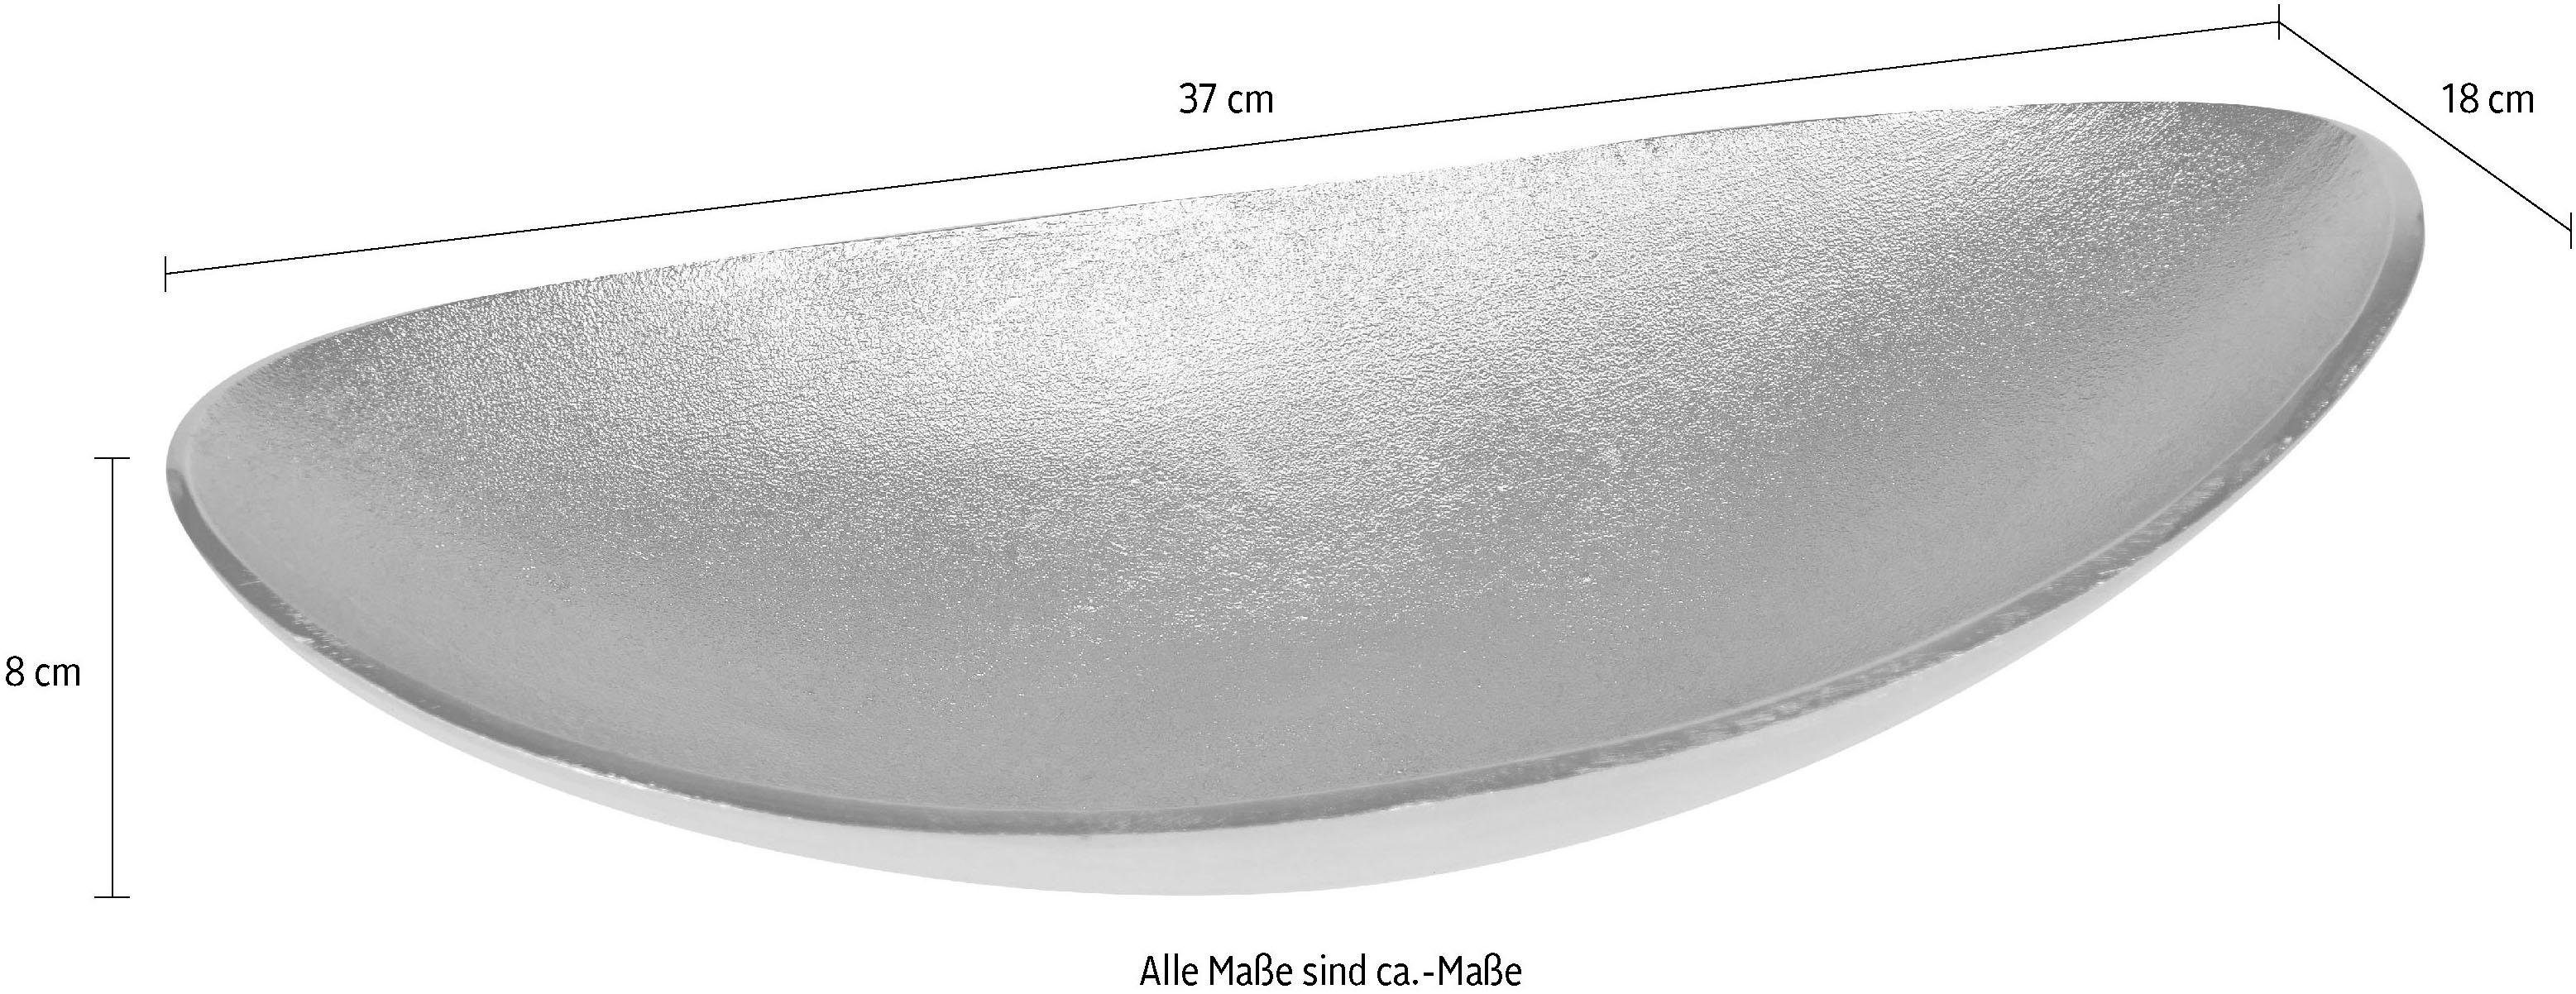 Home affaire Aluminium, Dekoschale oval silberfarben aus Julia